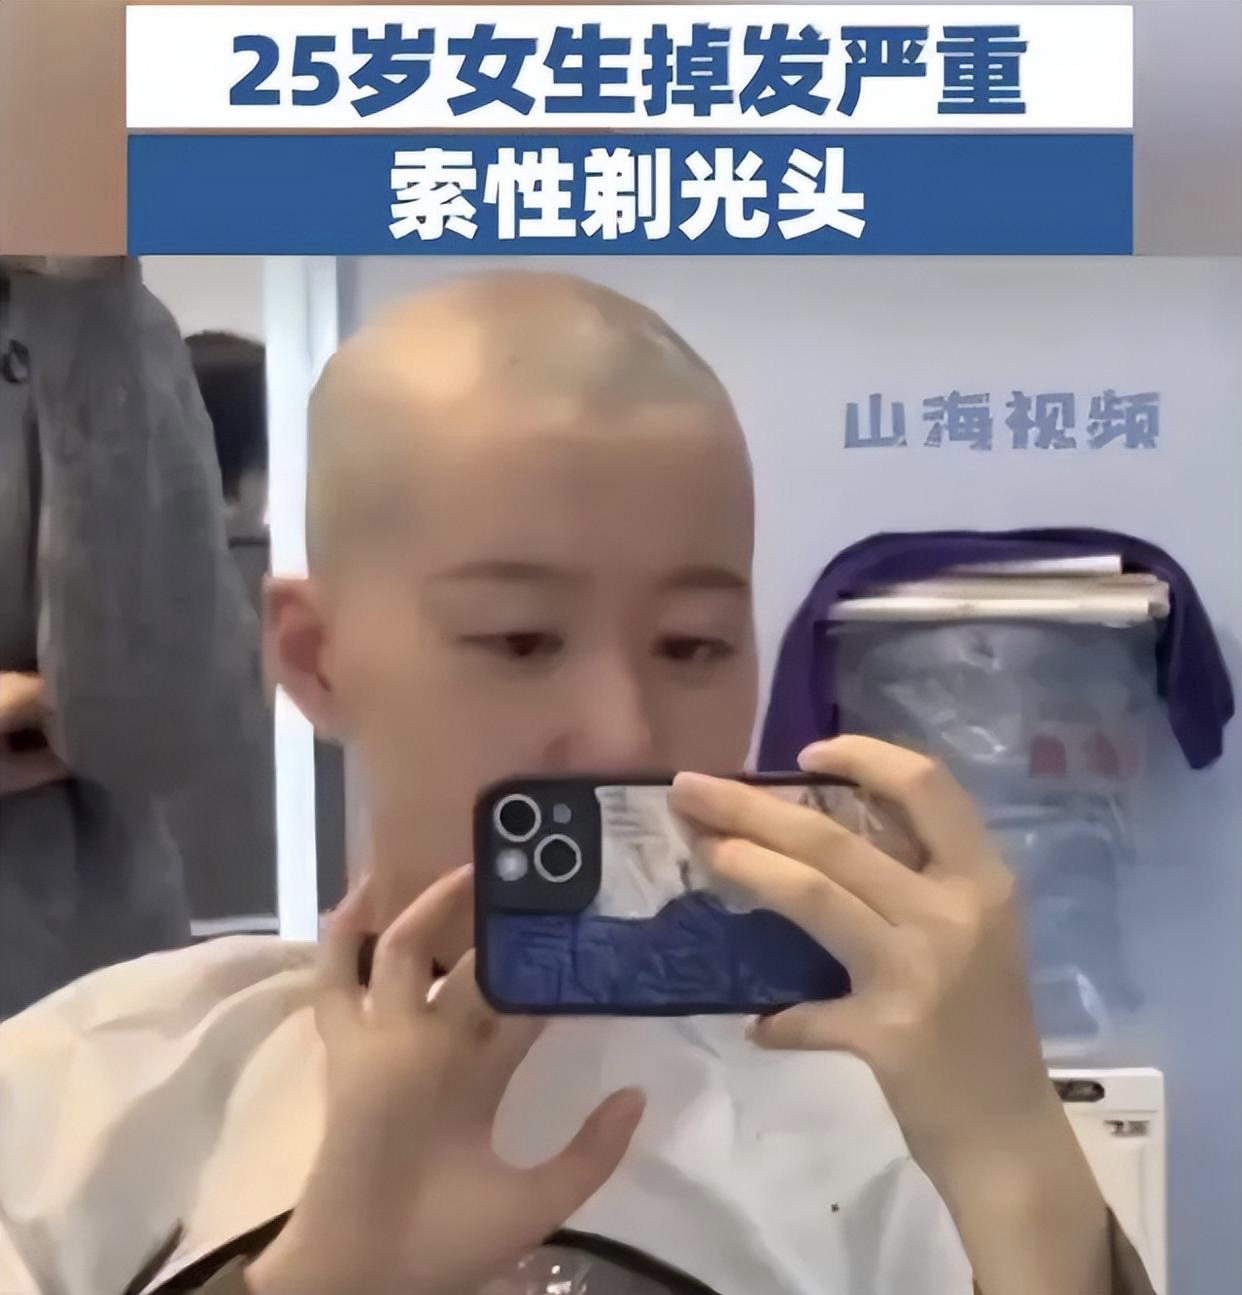 小学六年级学生剃光头,出售超粗头发、光碟(21)